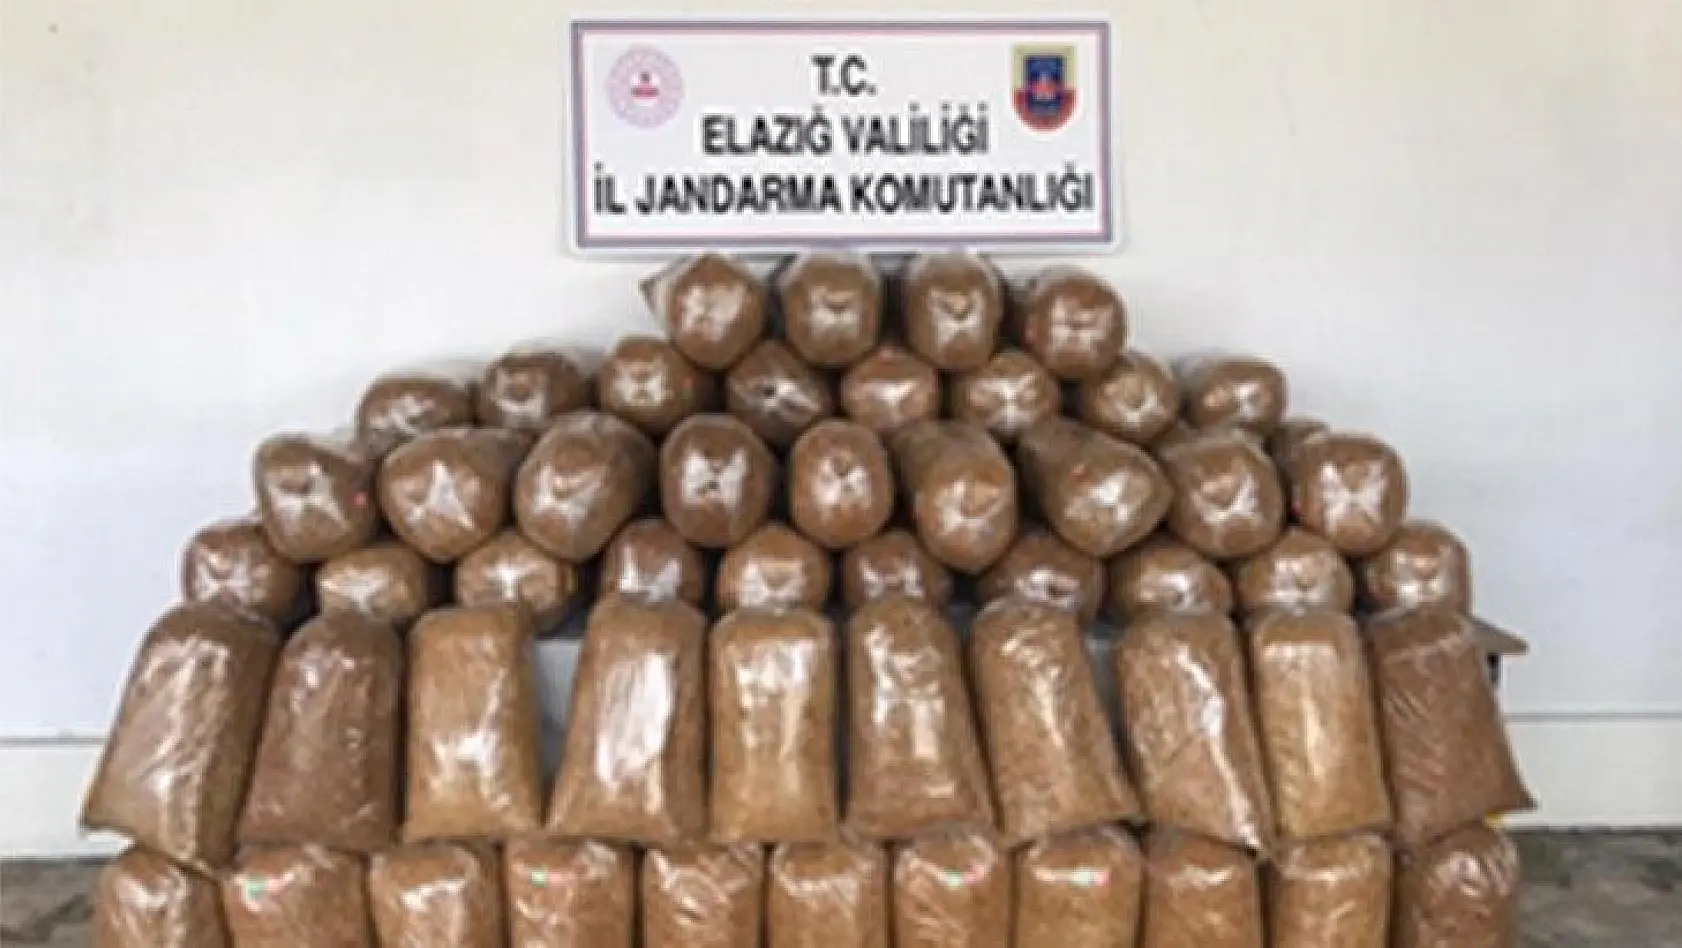 Elazığ'da 426 kilogram kaçak tütün ele geçirildi